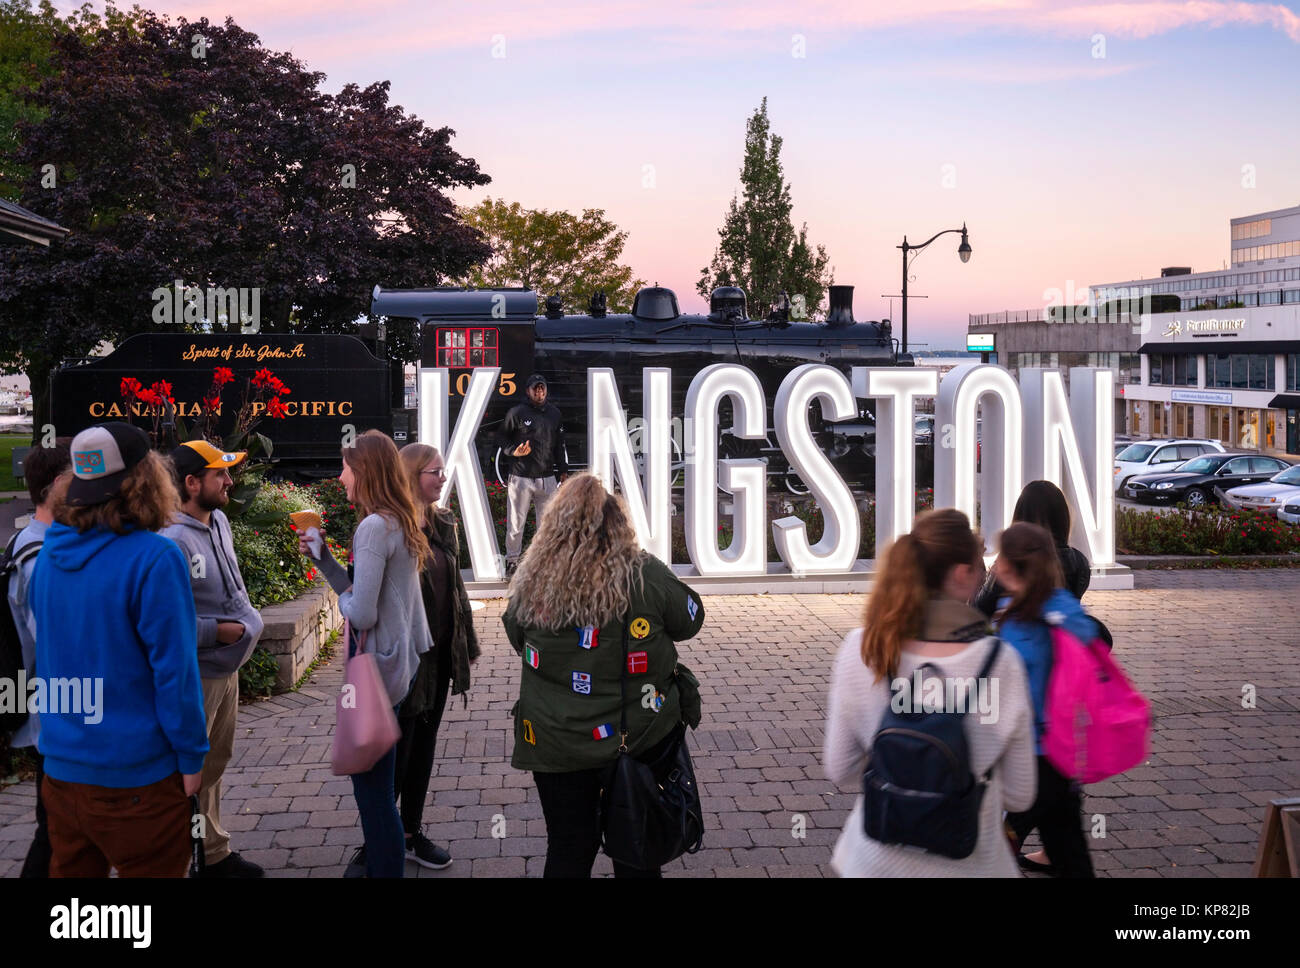 Ein beleuchtetes Schild in der Dämmerung für Kingston "ICH in Kingston' ist eine touristische Attraktion mit jungen Menschen (Touristen) sammeln, Fotos zu machen. Stockfoto